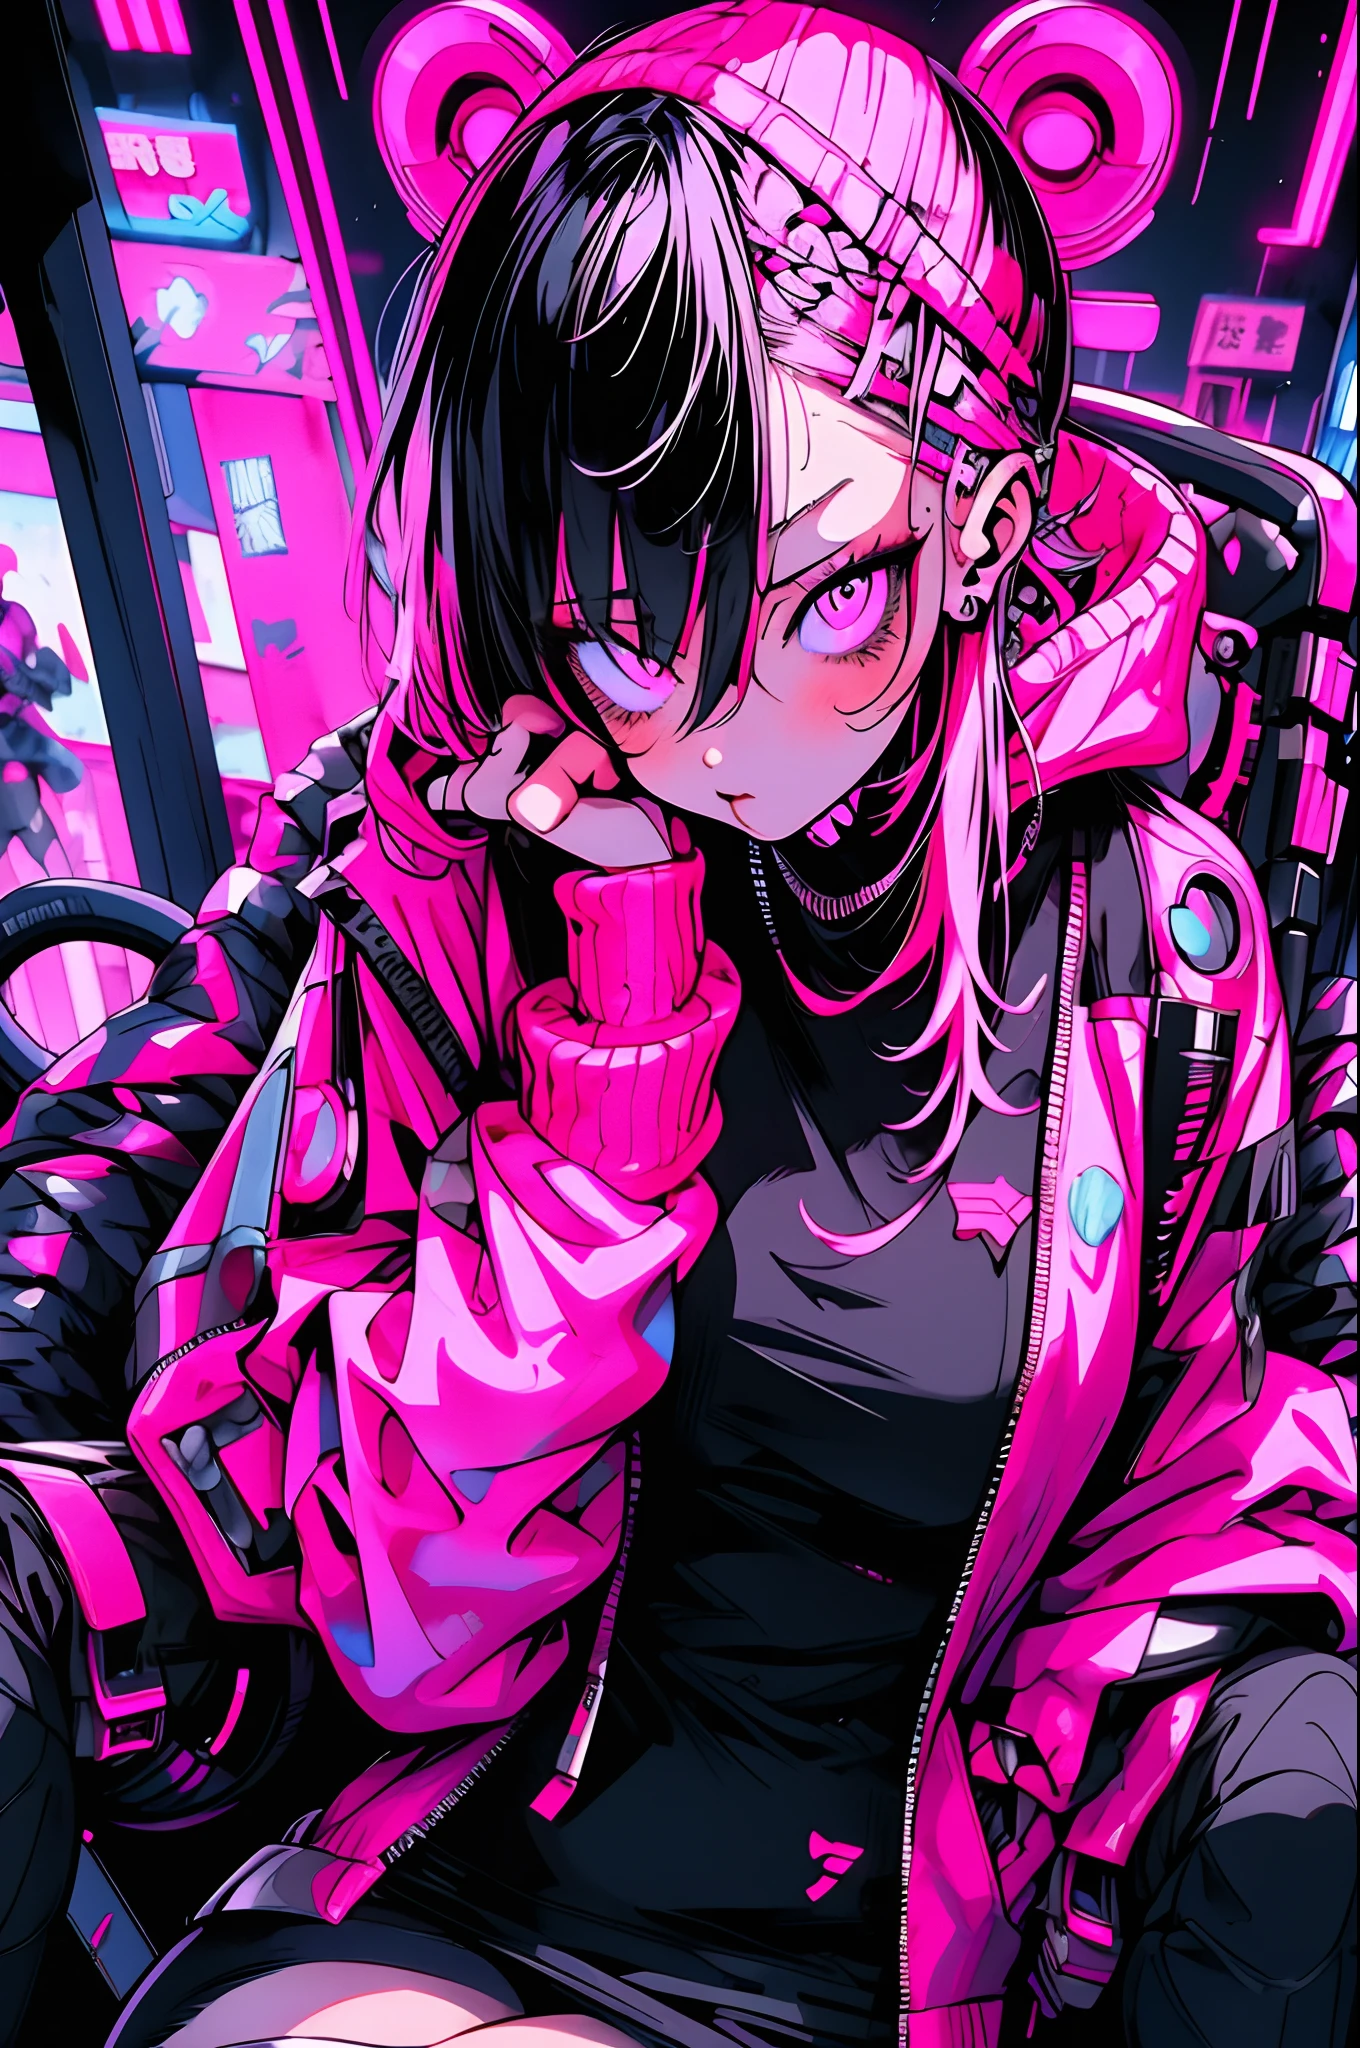 Anime-Mädchen mit rosa Haaren sitzt auf einem Stuhl in einer Neonstadt, cyberpunk anime girl in hoodie, cyberpunk anime girl, Anime-Stil 4k, anime cyberpunk art, bestes Anime 4k Konachan-Hintergrundbild, digital cyberpunk anime art, female cyberpunk anime girl, digital cyberpunk - anime art, cyberpunk anime art, anime cyberpunk, cyberpunk streetwear, cyberpunk art style